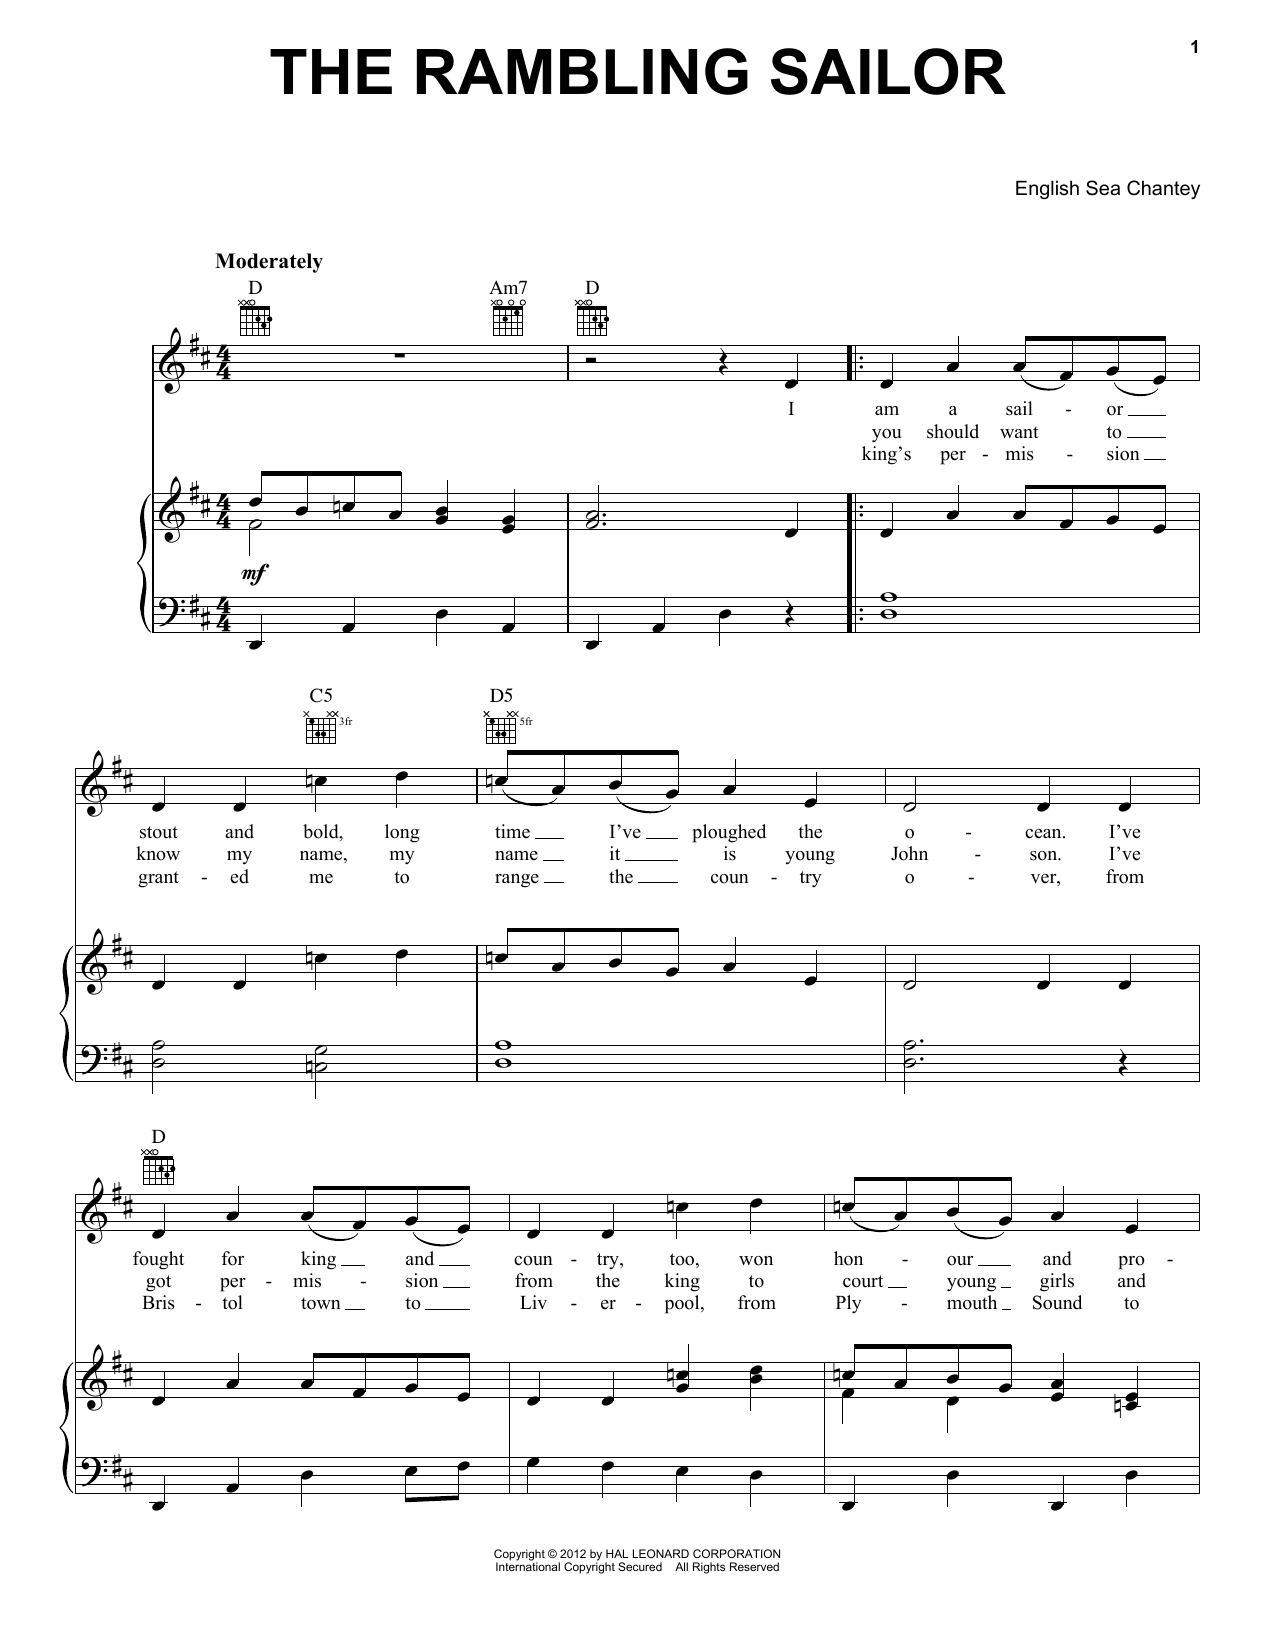 English Sea Chantey The Rambling Sailor sheet music notes and chords. Download Printable PDF.